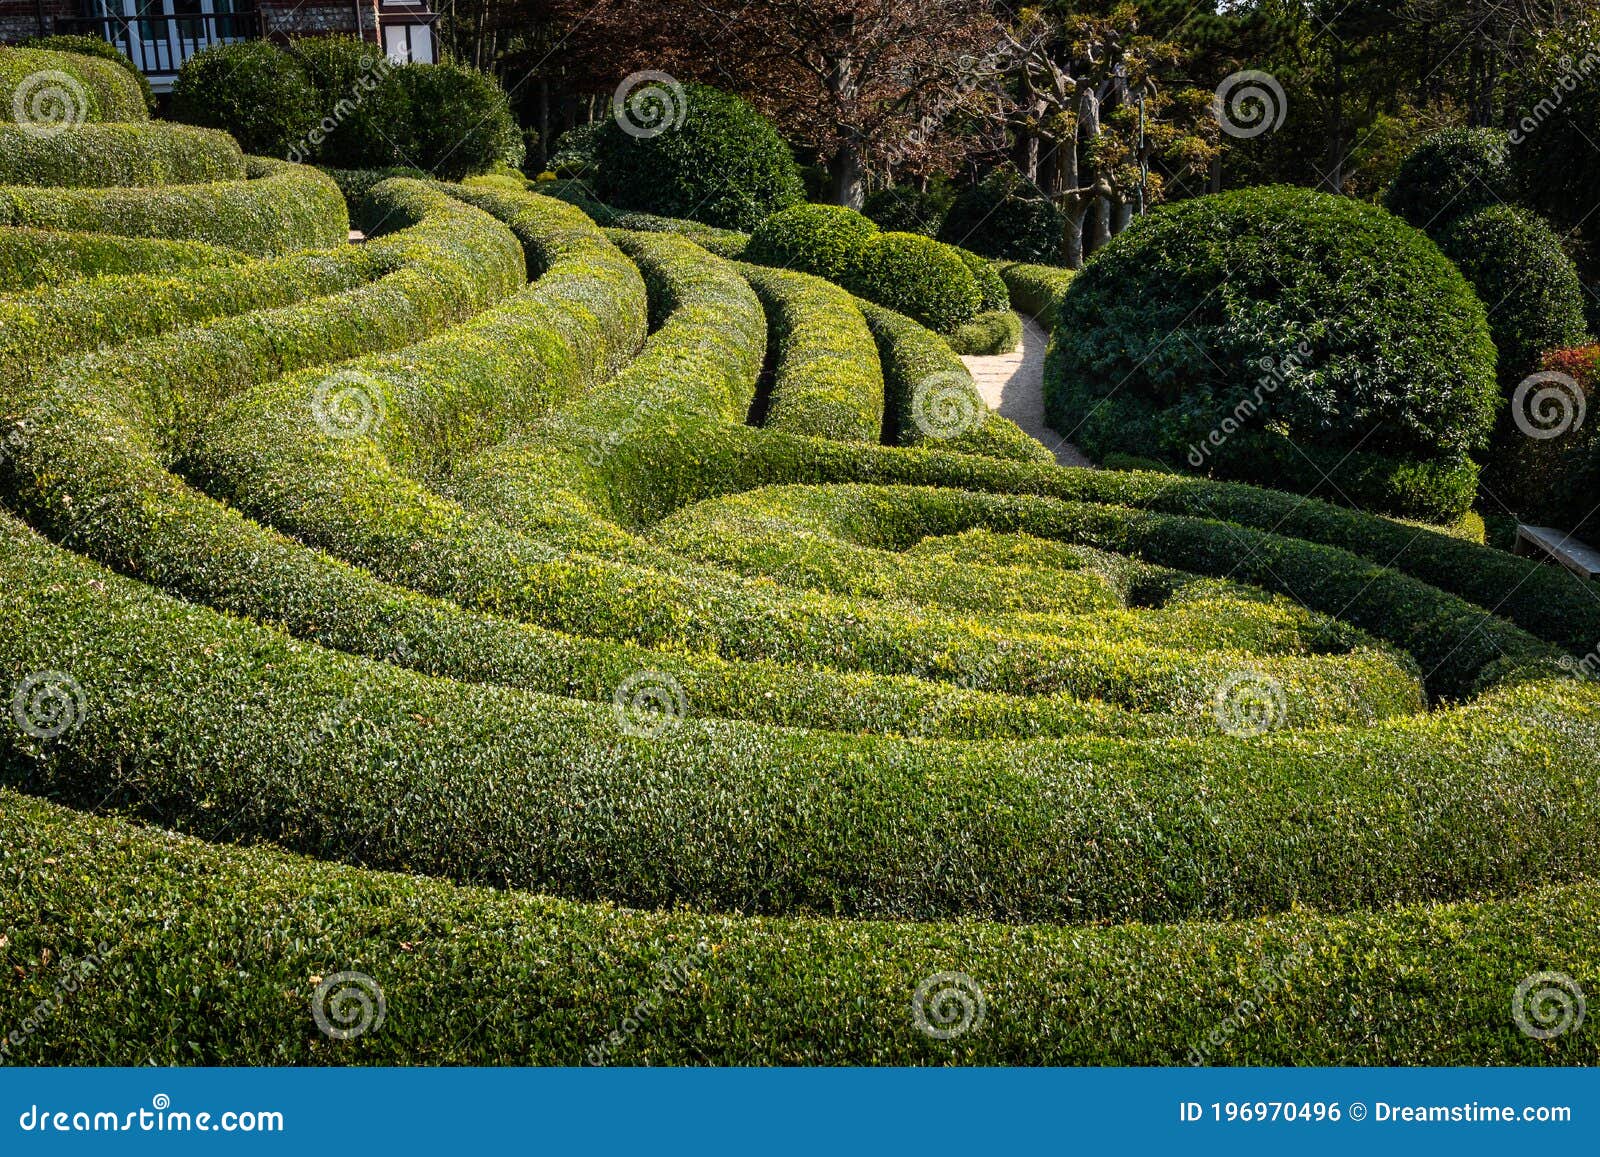 buis cut in landscape garden in france